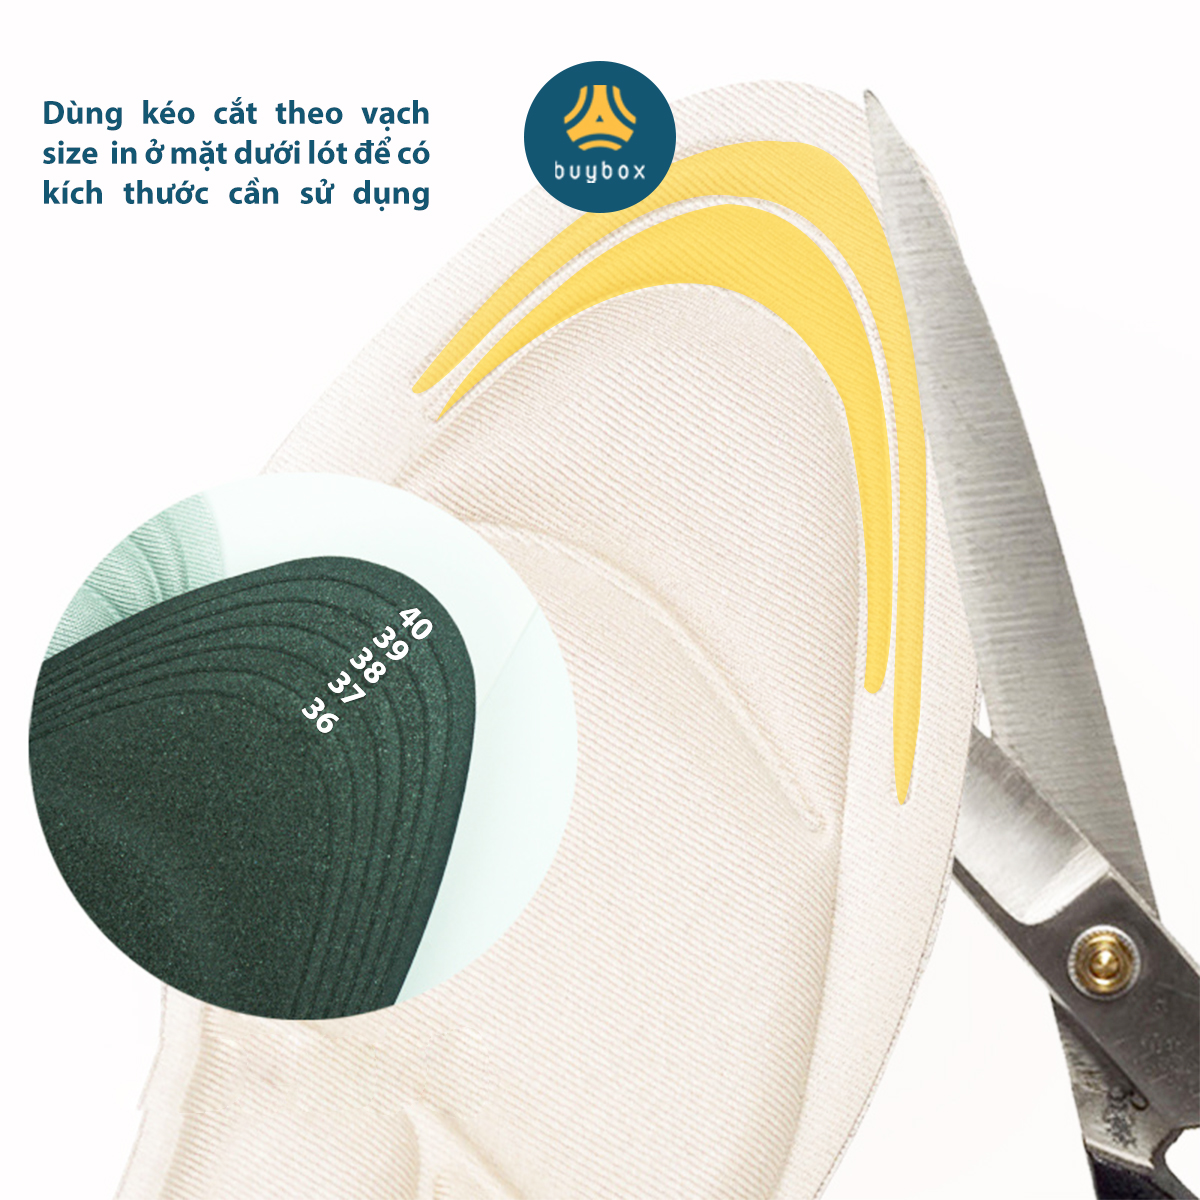 Miếng lót giảm size cho giày bị rộng Cao Cấp - buybox - BBPK11 (Da beo)